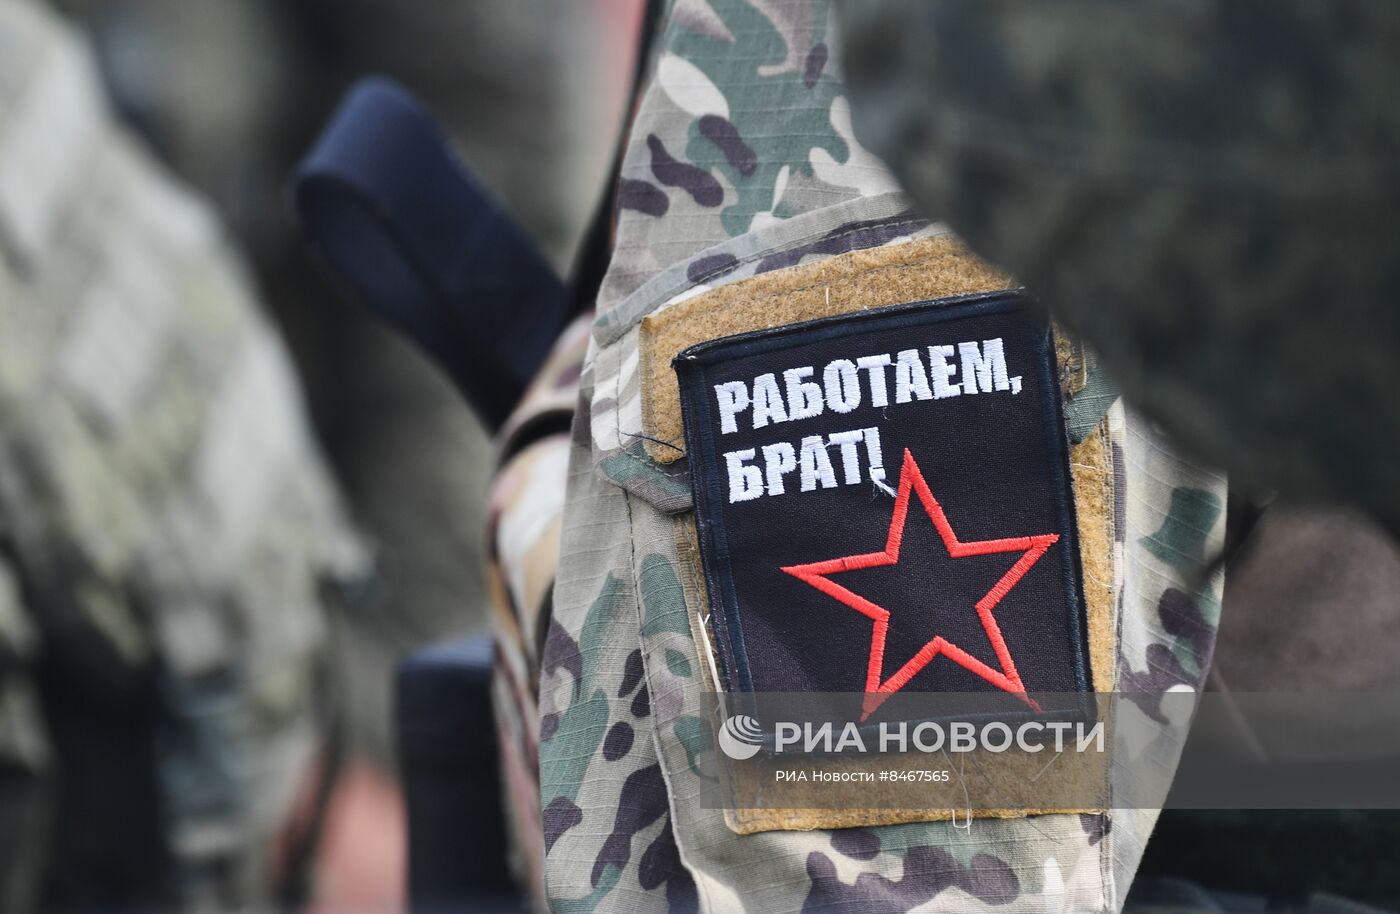 Интенсивная подготовка разведчиков группировки "Юг" из числа военнослужащих ВС РФ на полигоне в ДНР